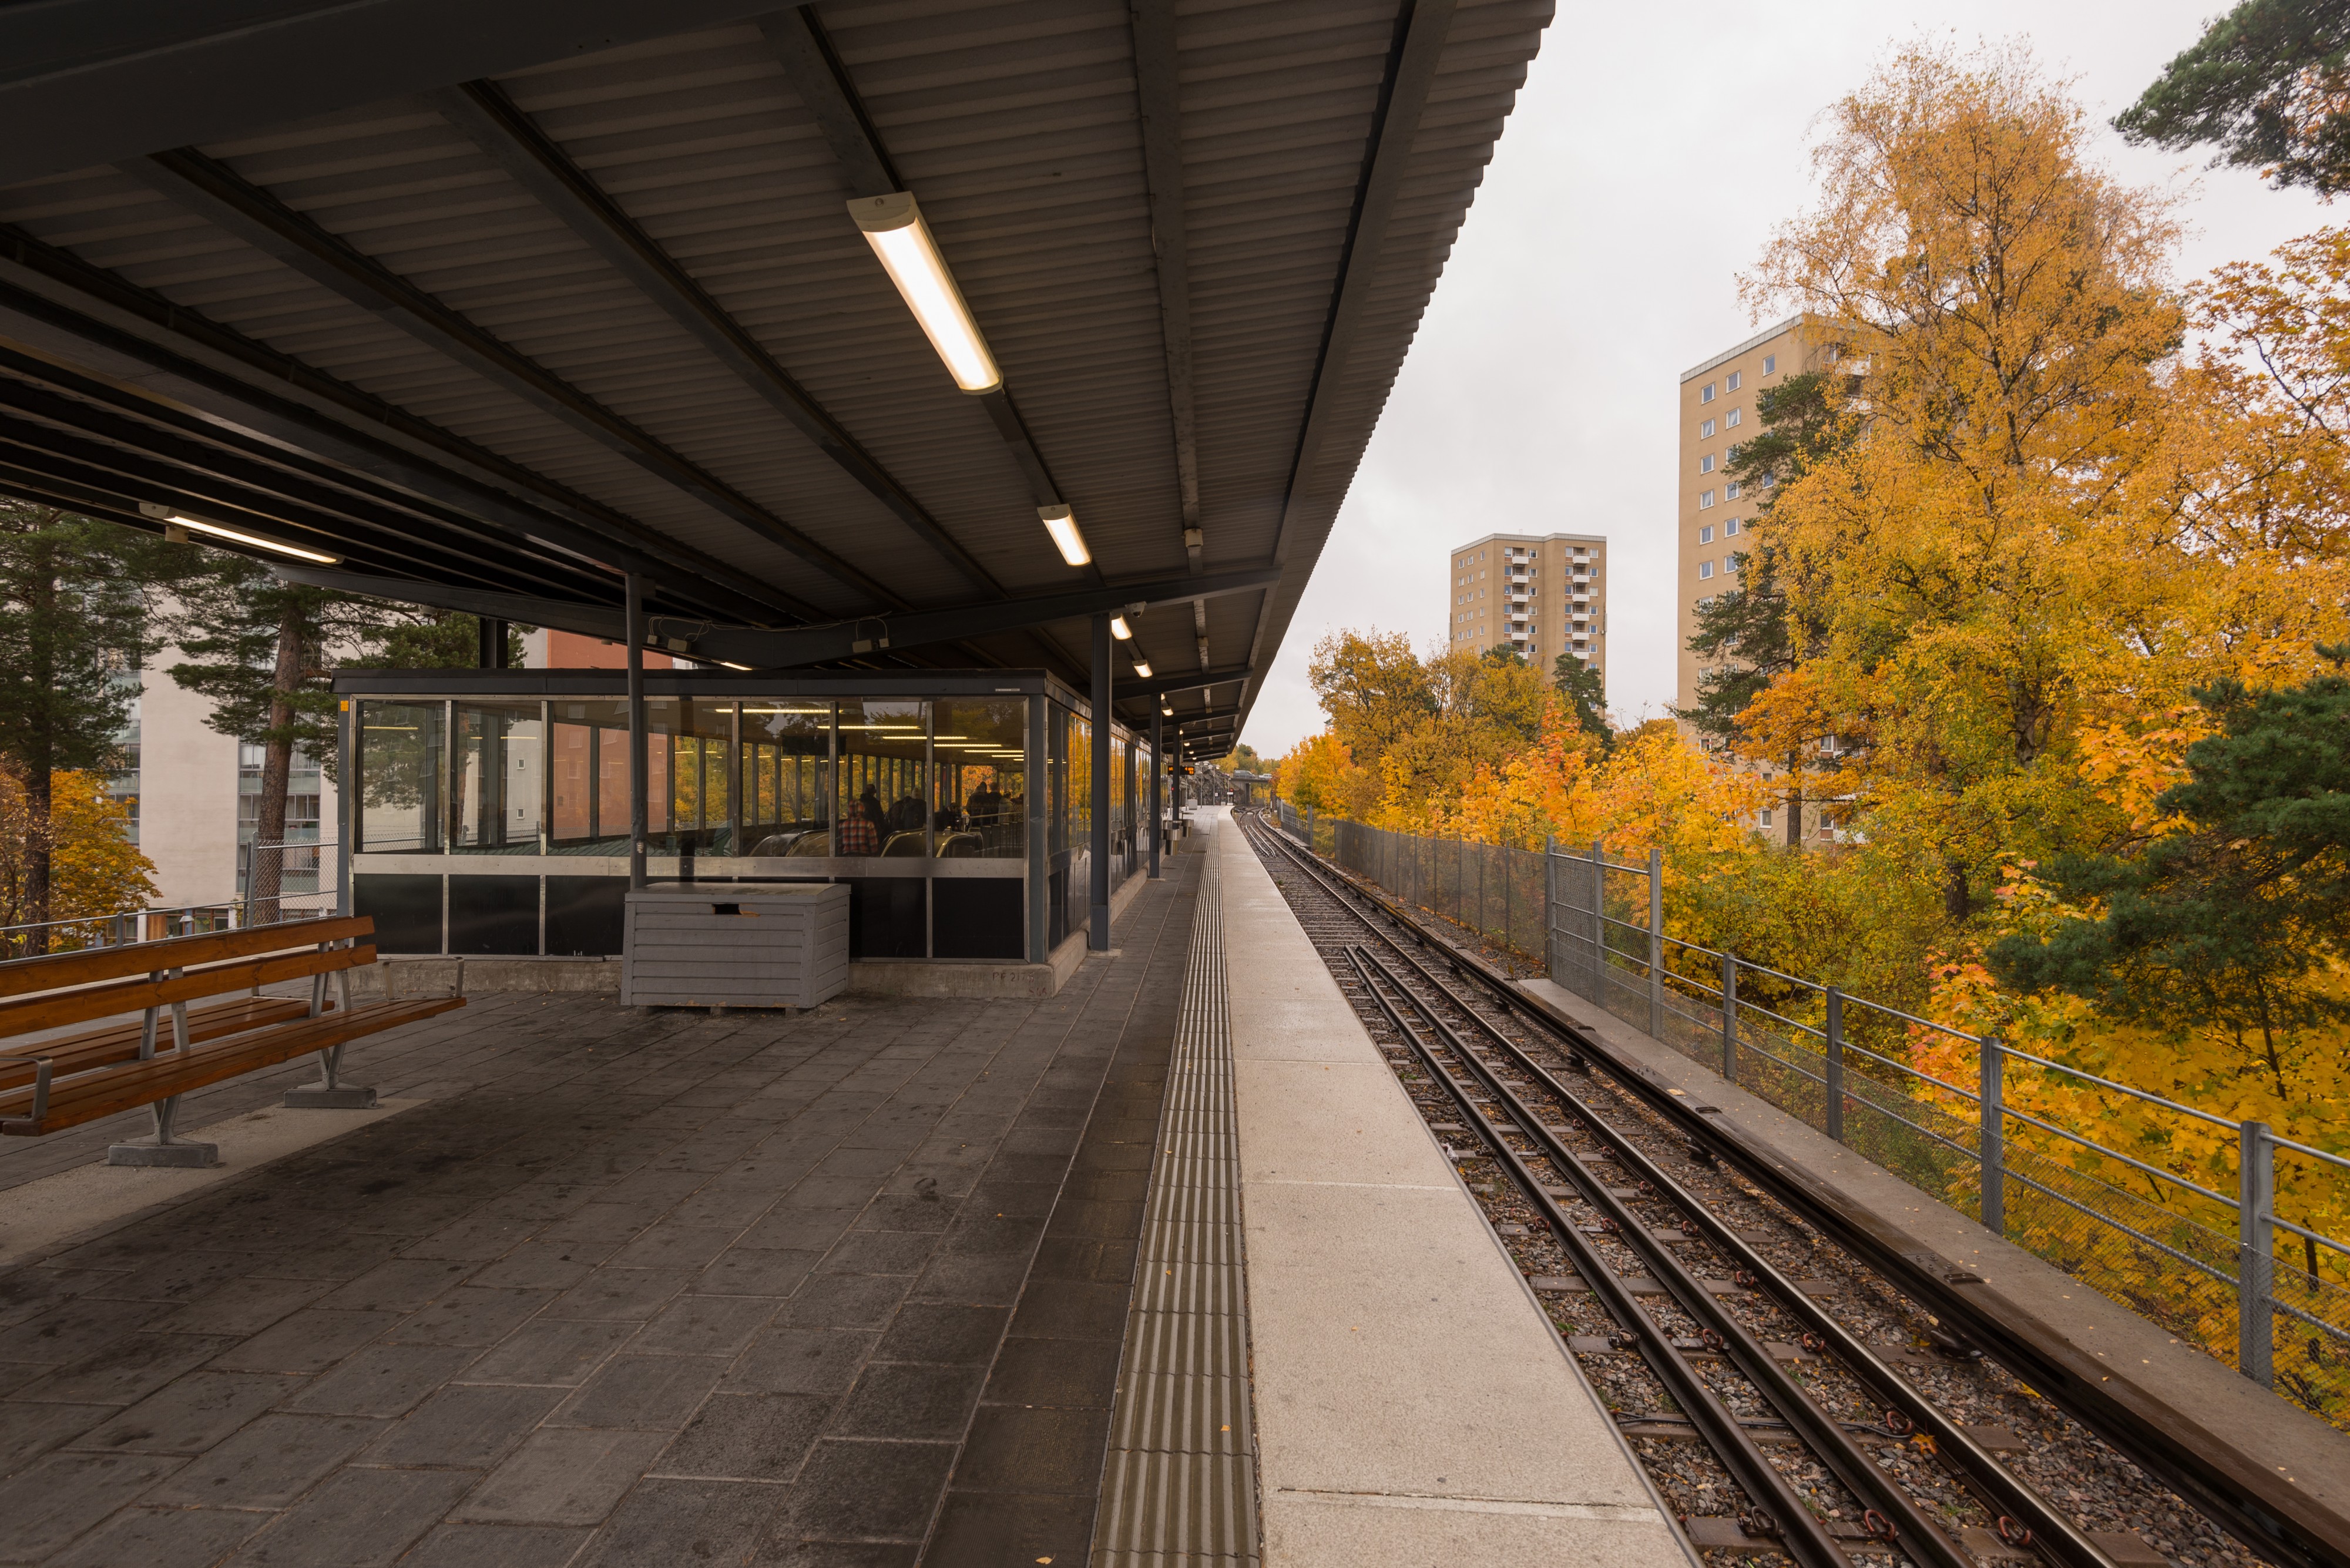 Hässelbygård metro station October 2016